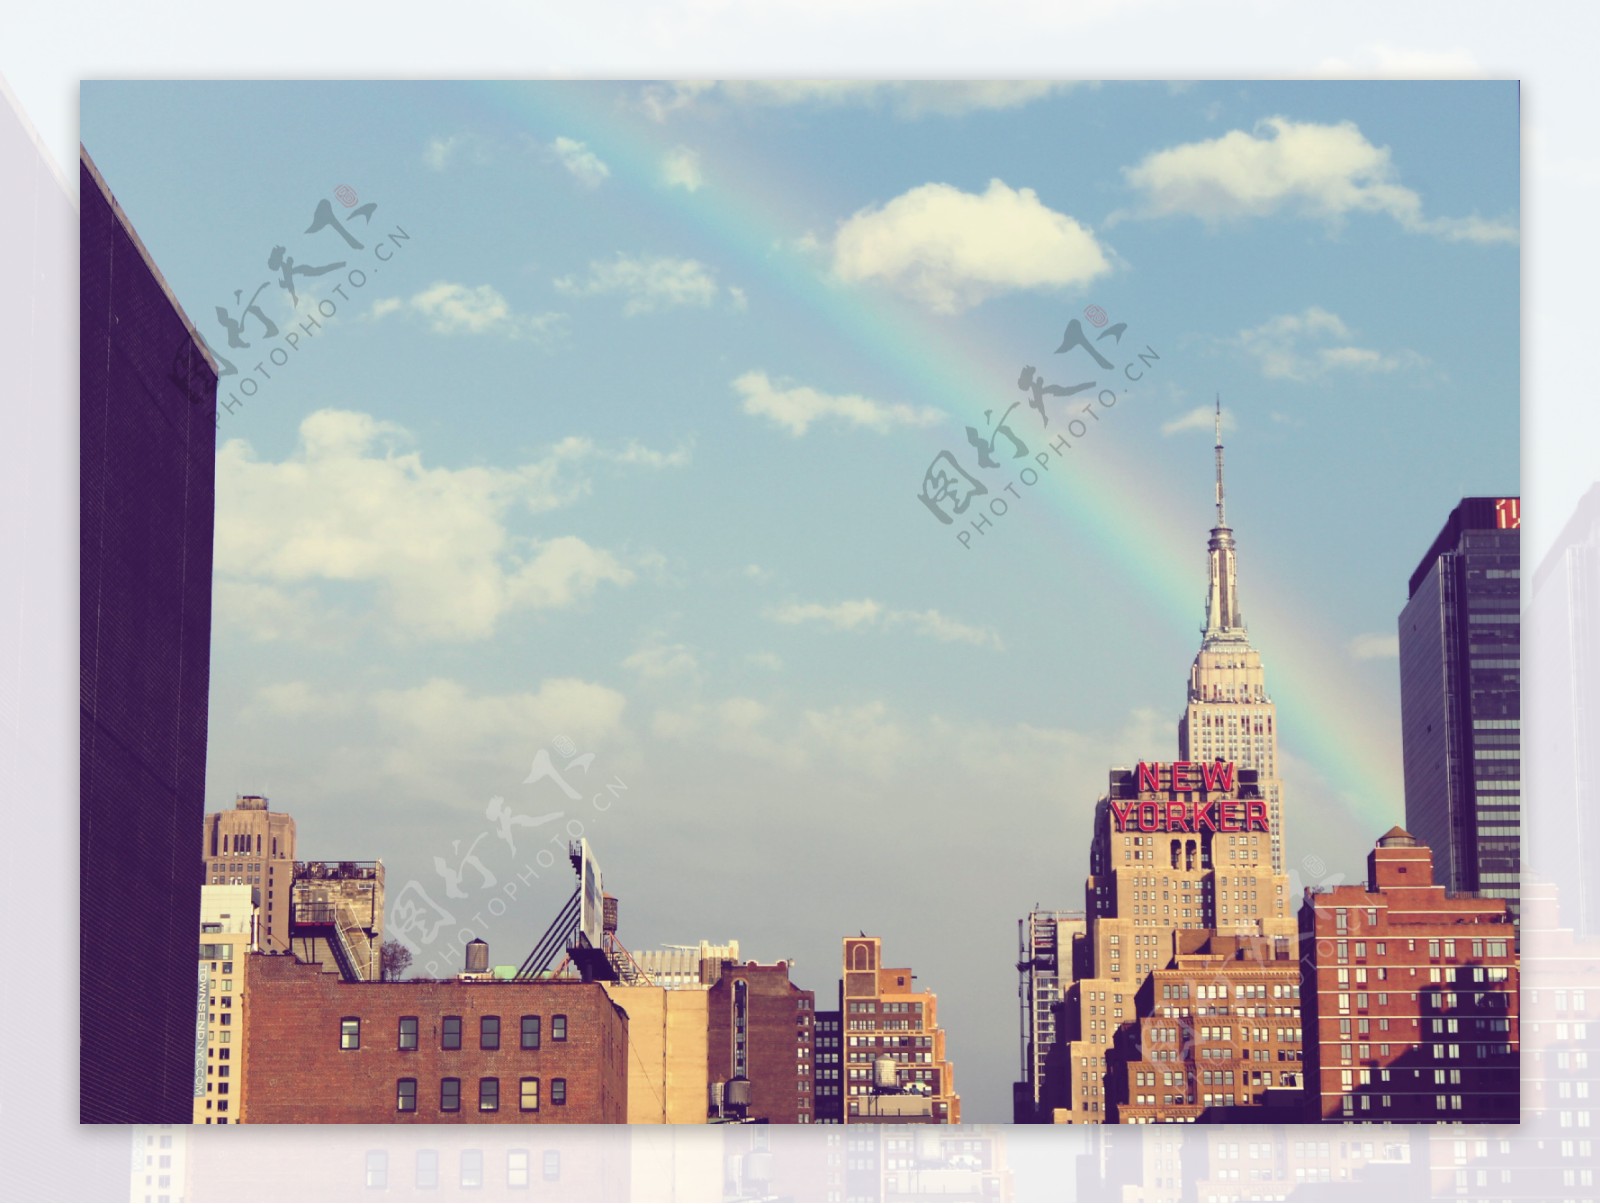 城市彩虹风景图片